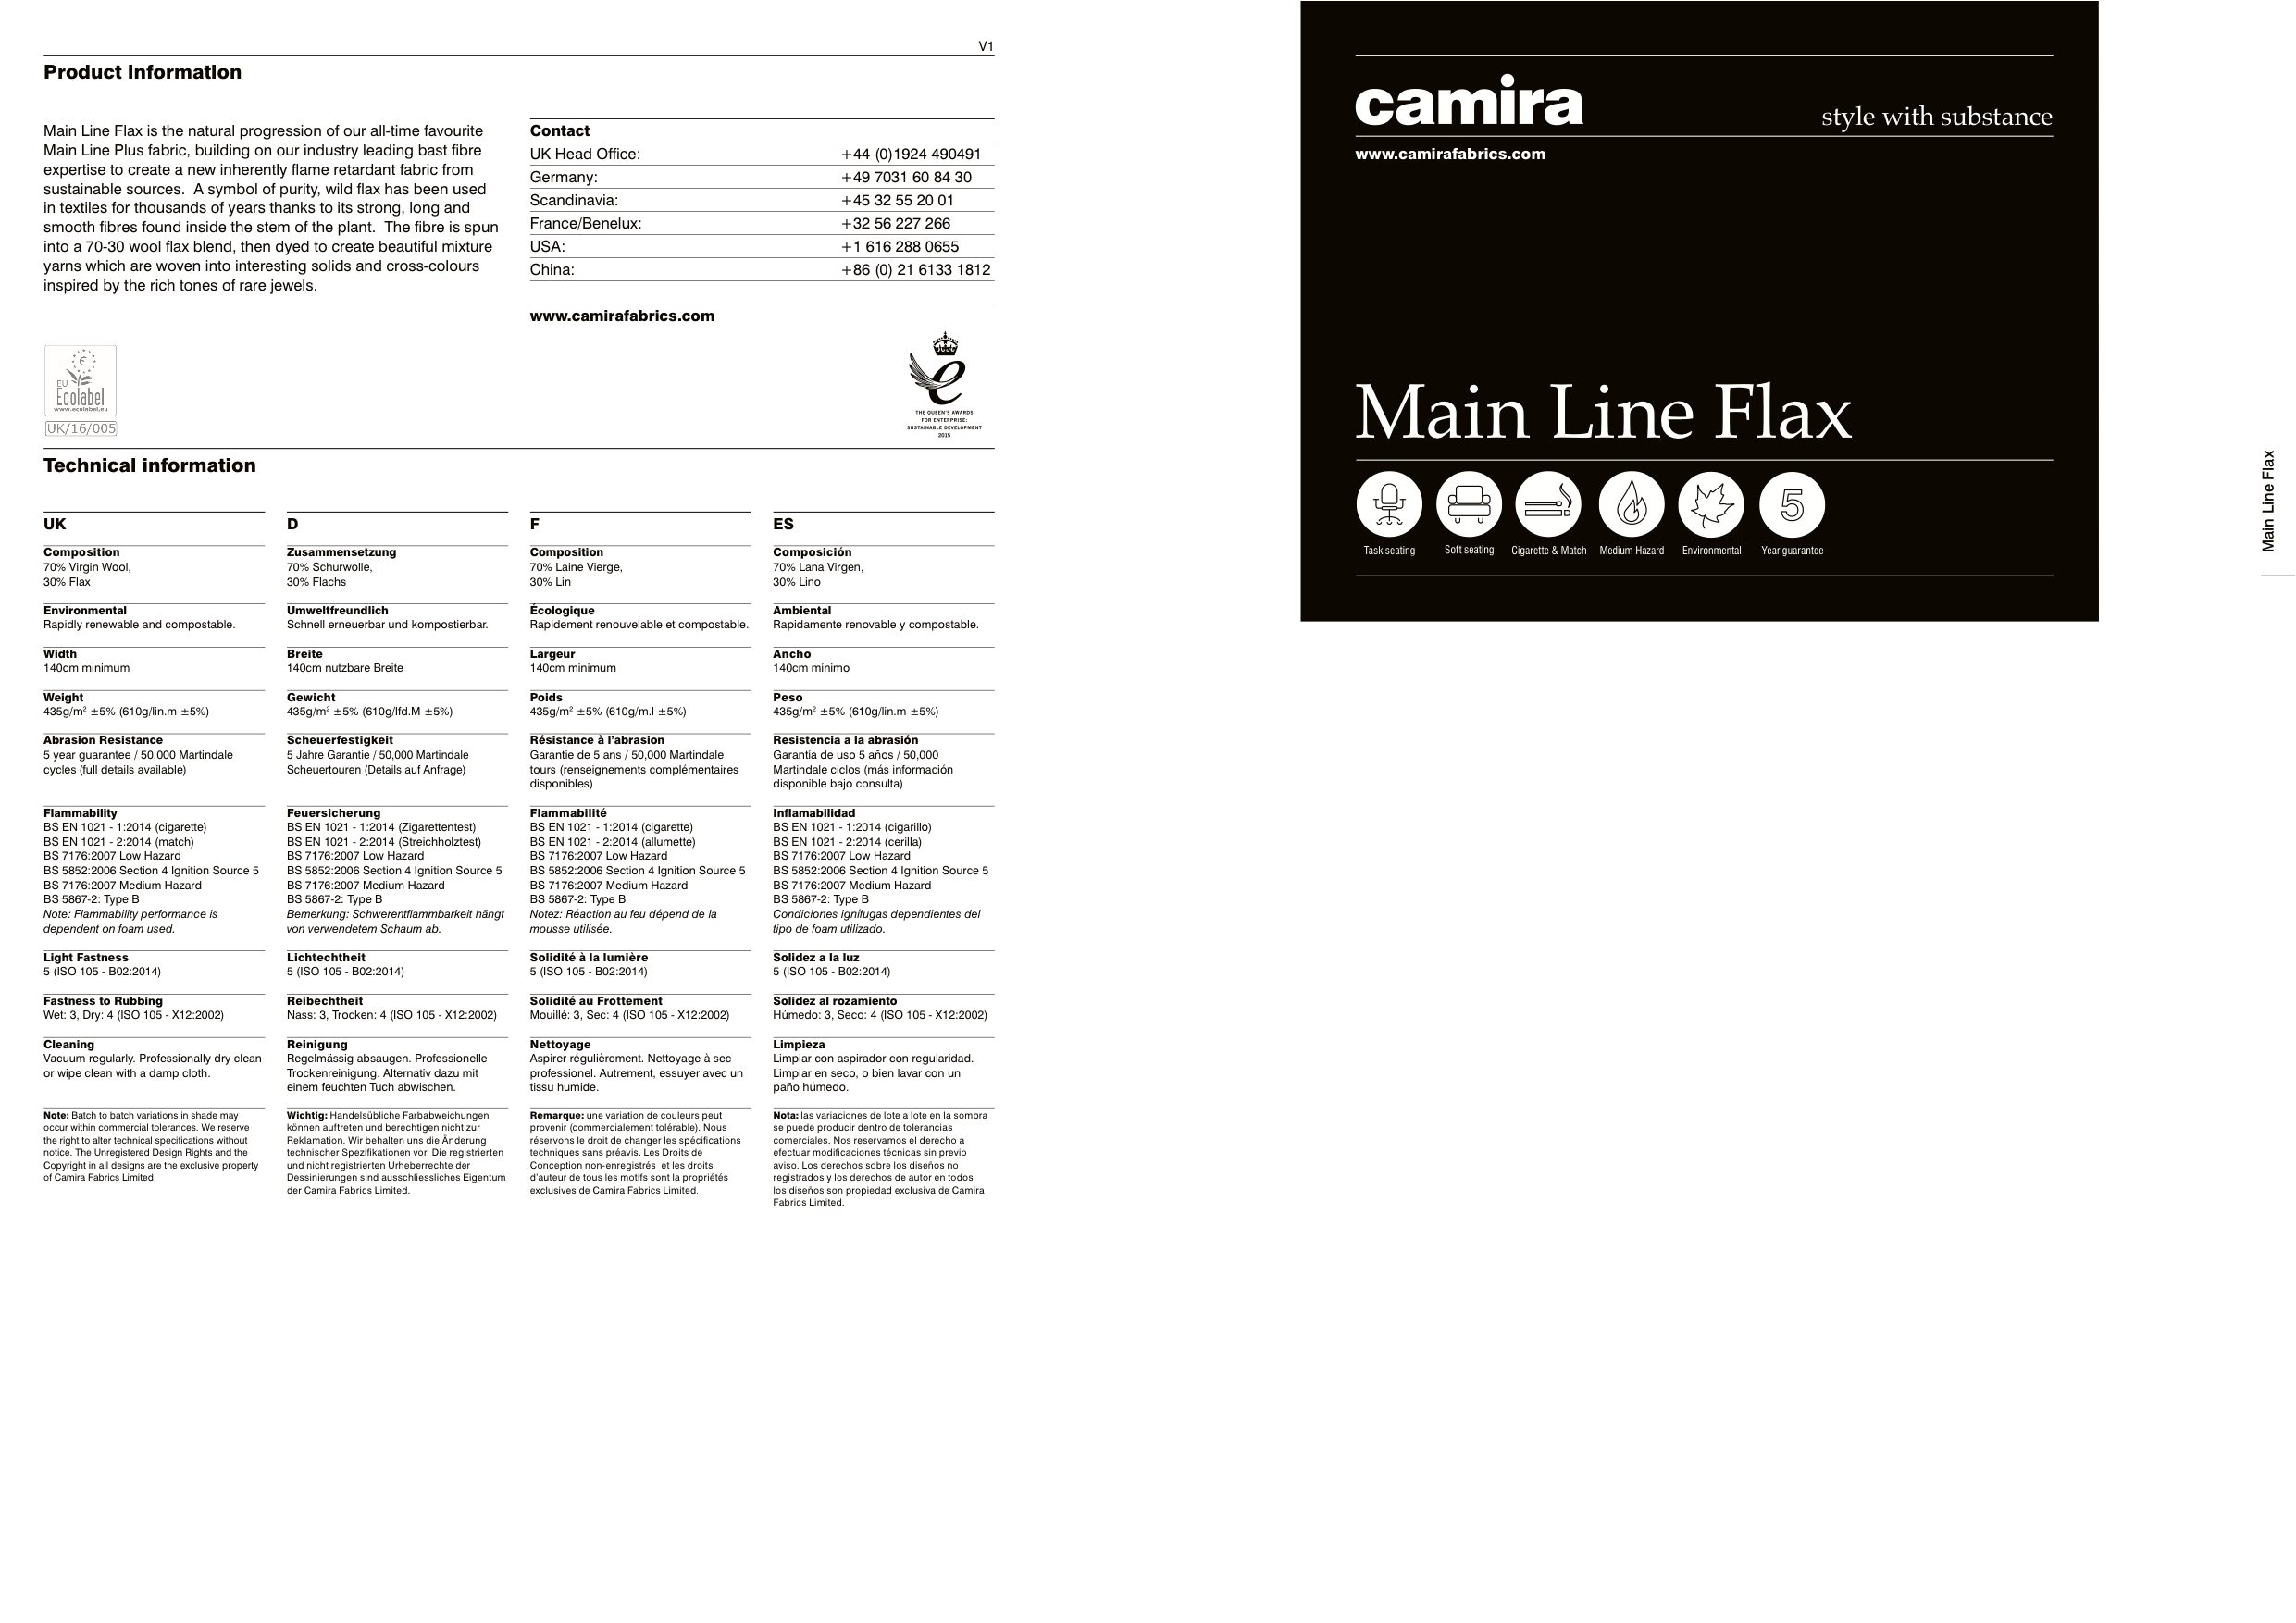 Camira Main Line Flax 2015